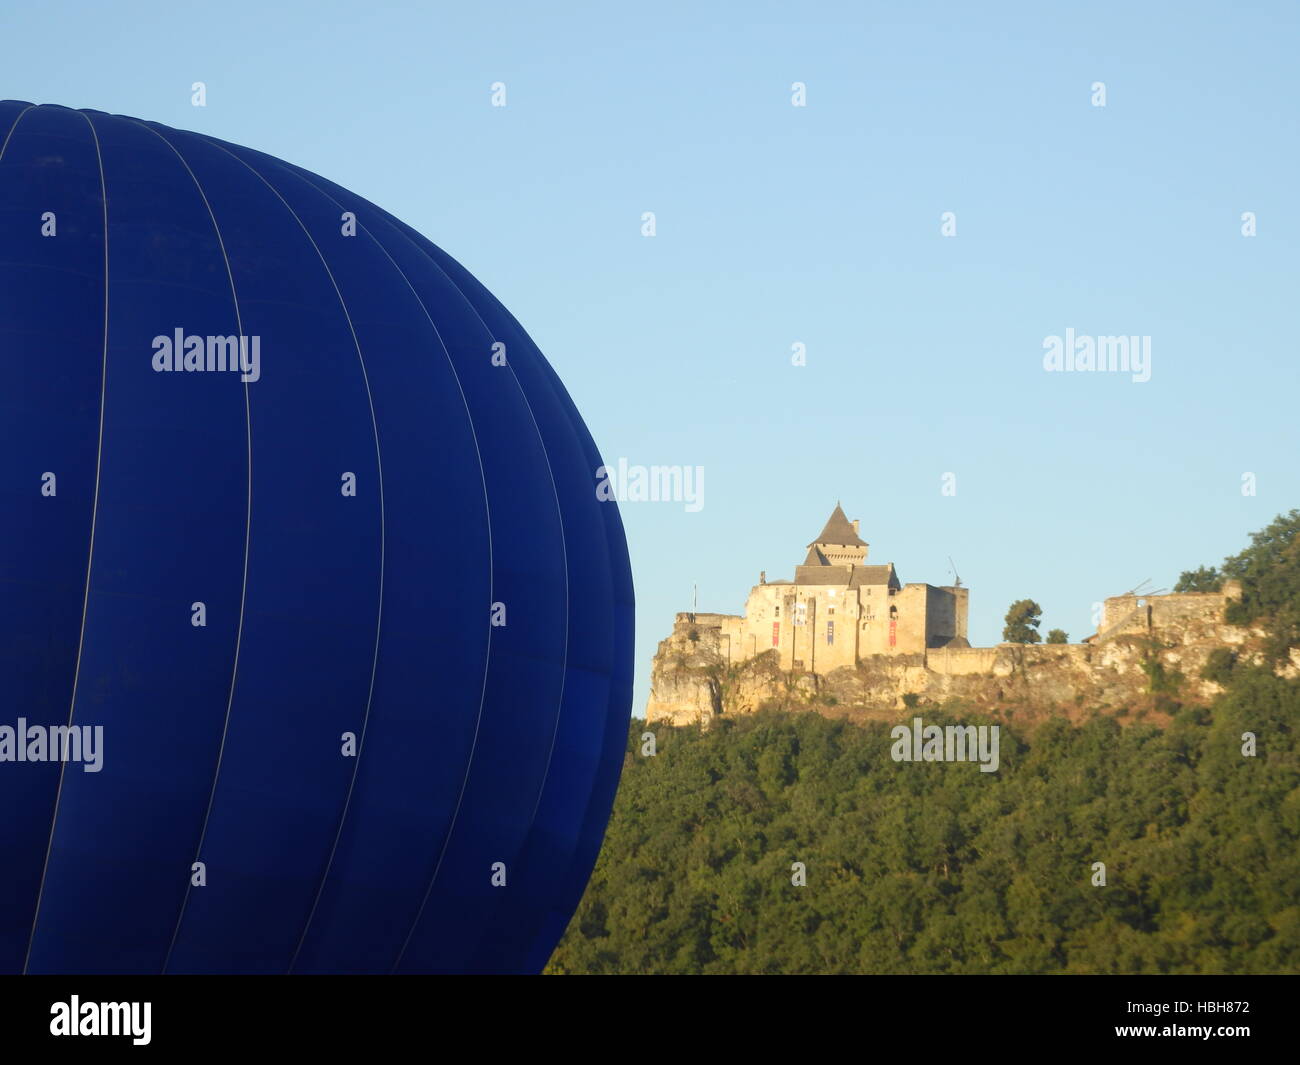 Ballon à Air chaud Banque D'Images